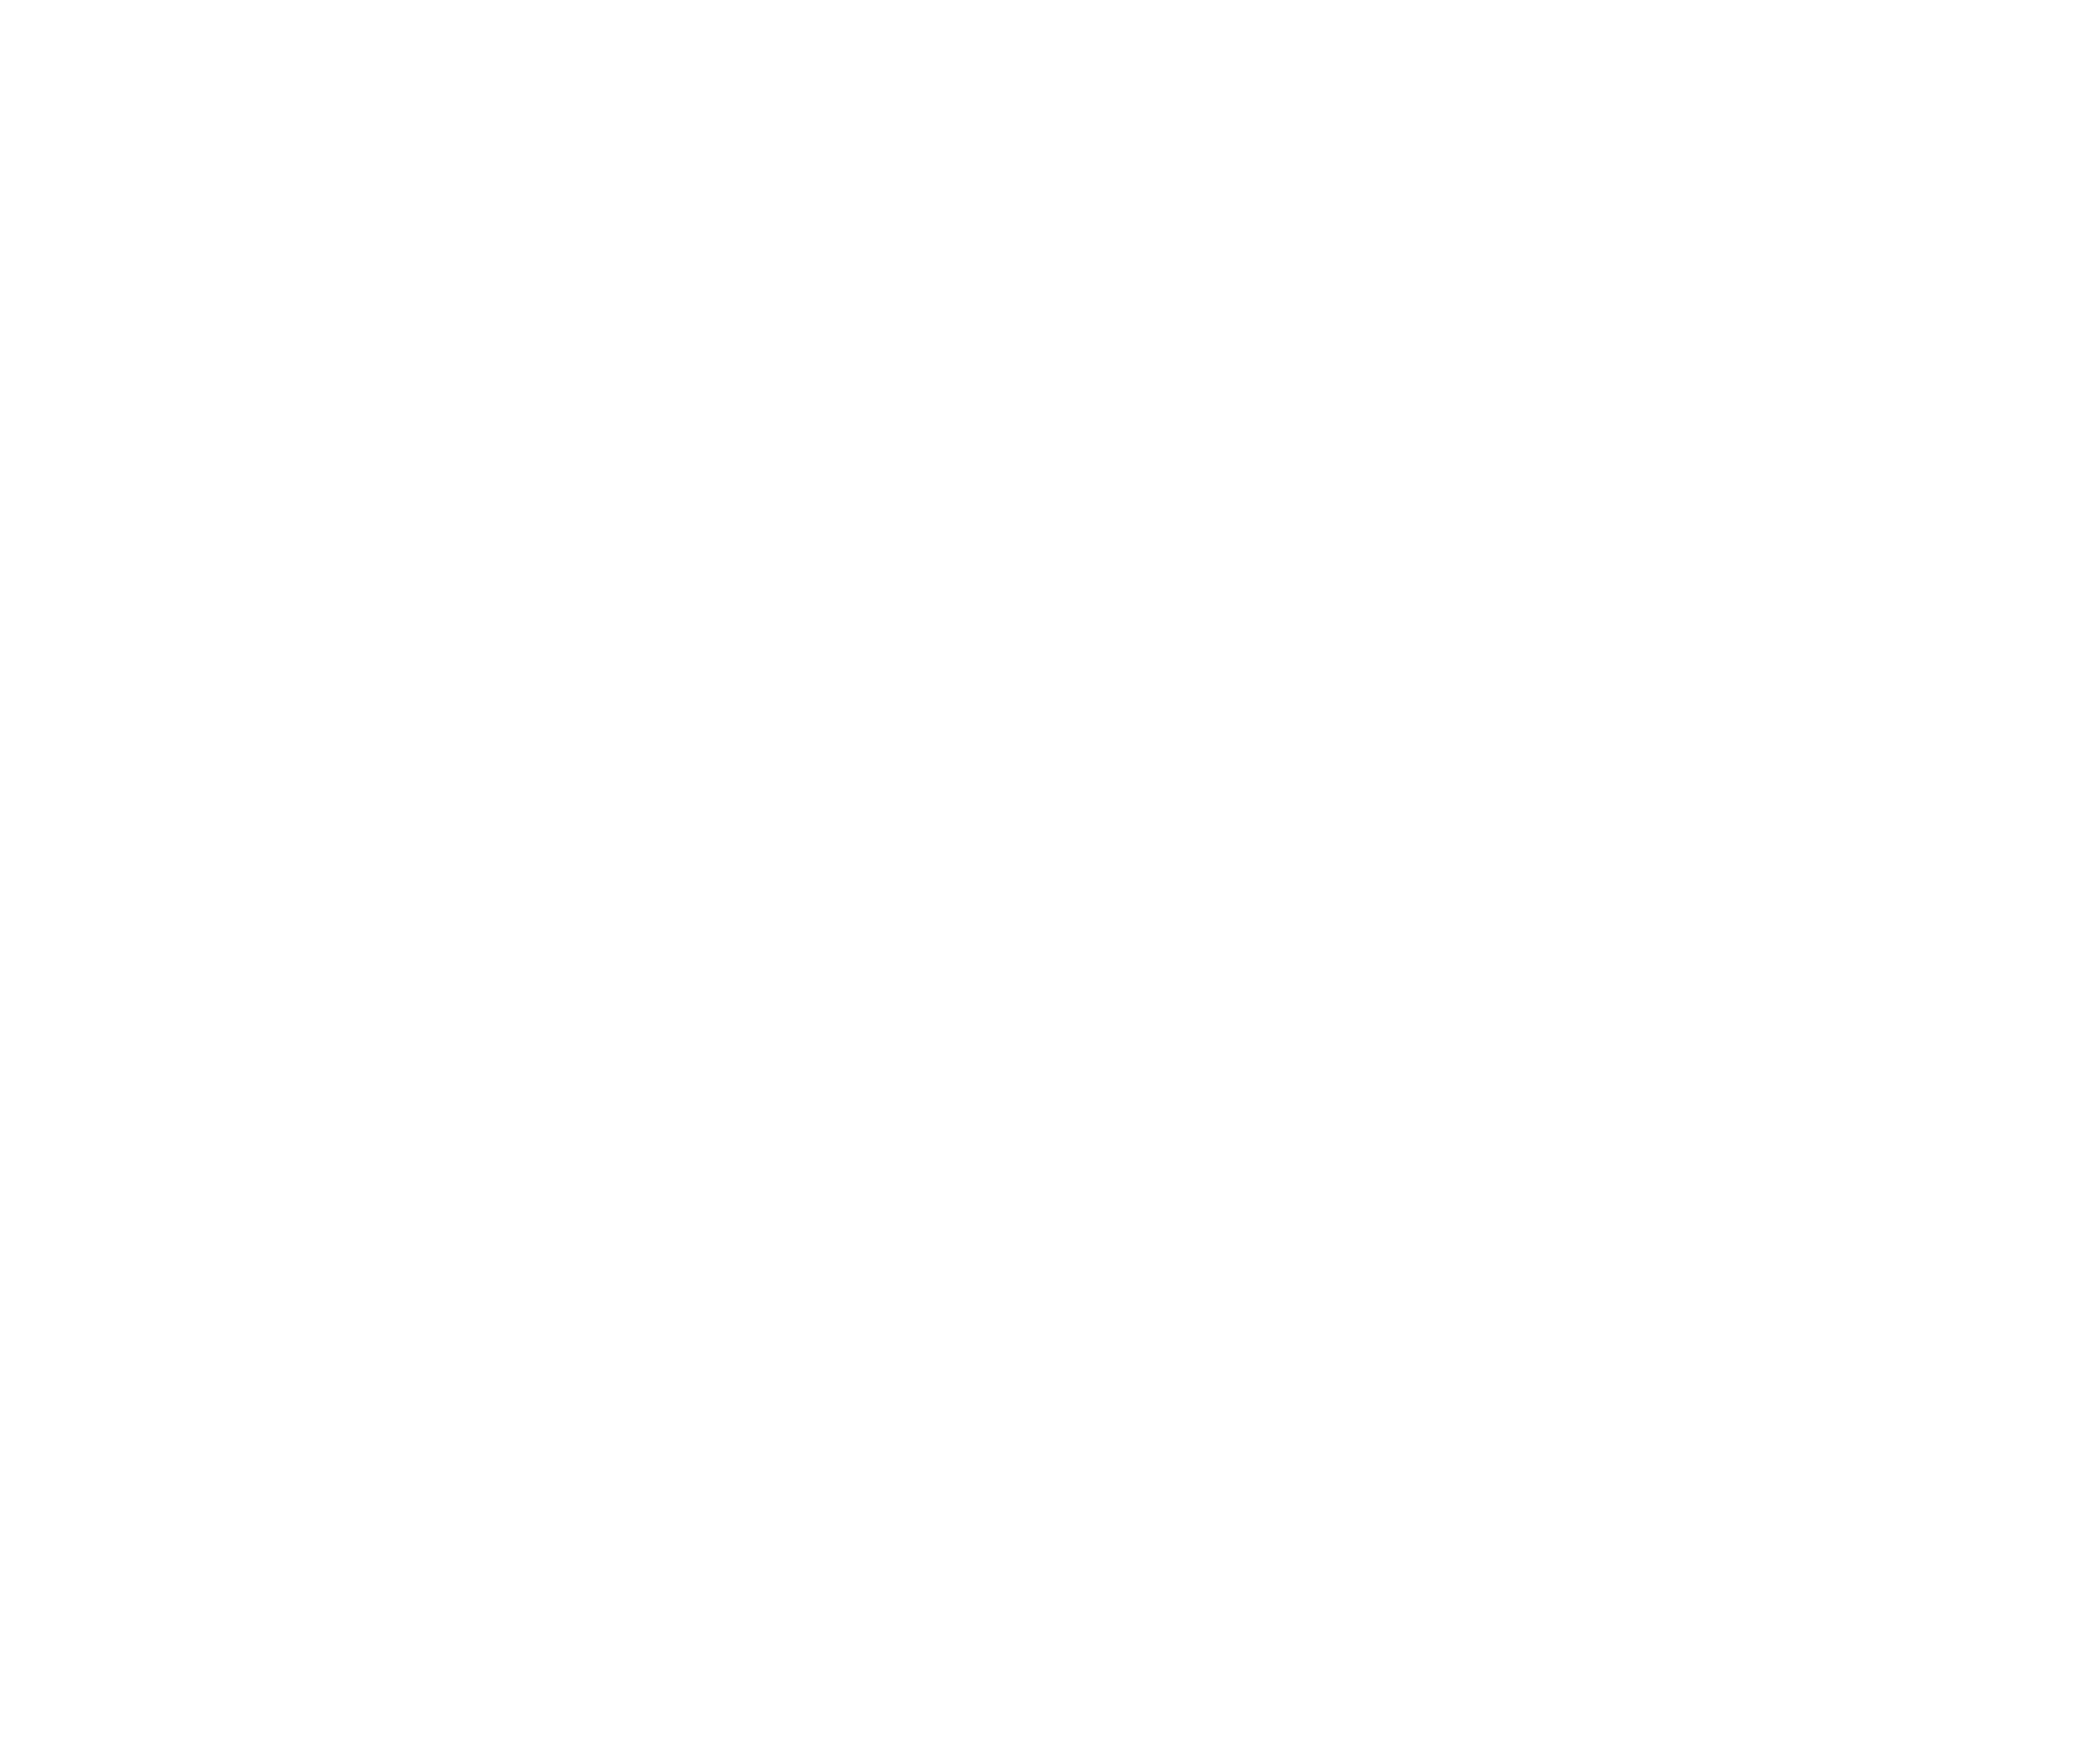 Torch2022 Winner